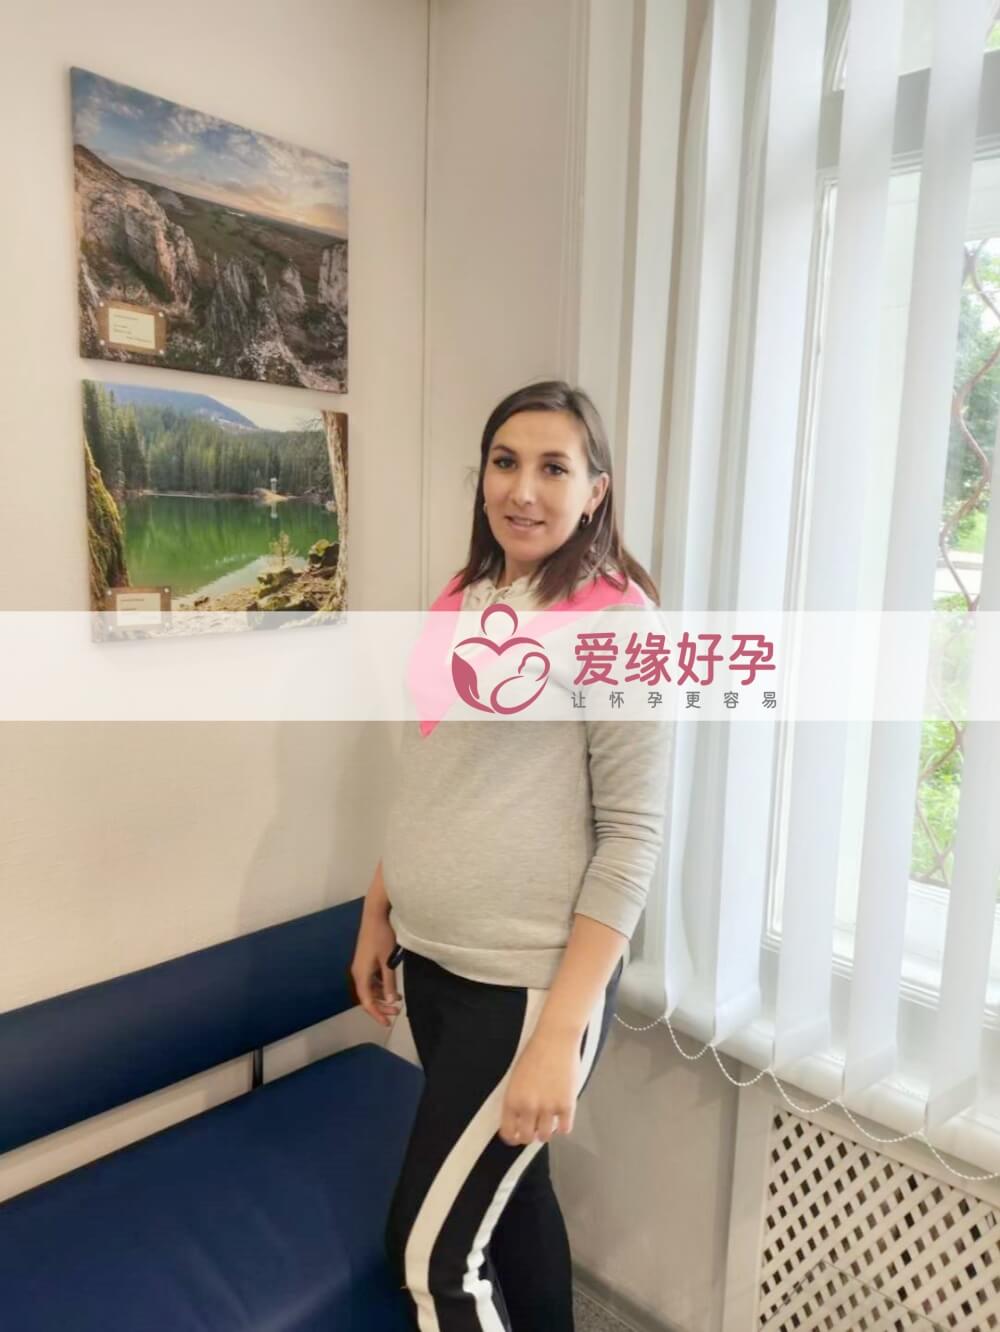 爱缘好孕: 乌克兰爱心妈妈34周孕检顺利通过